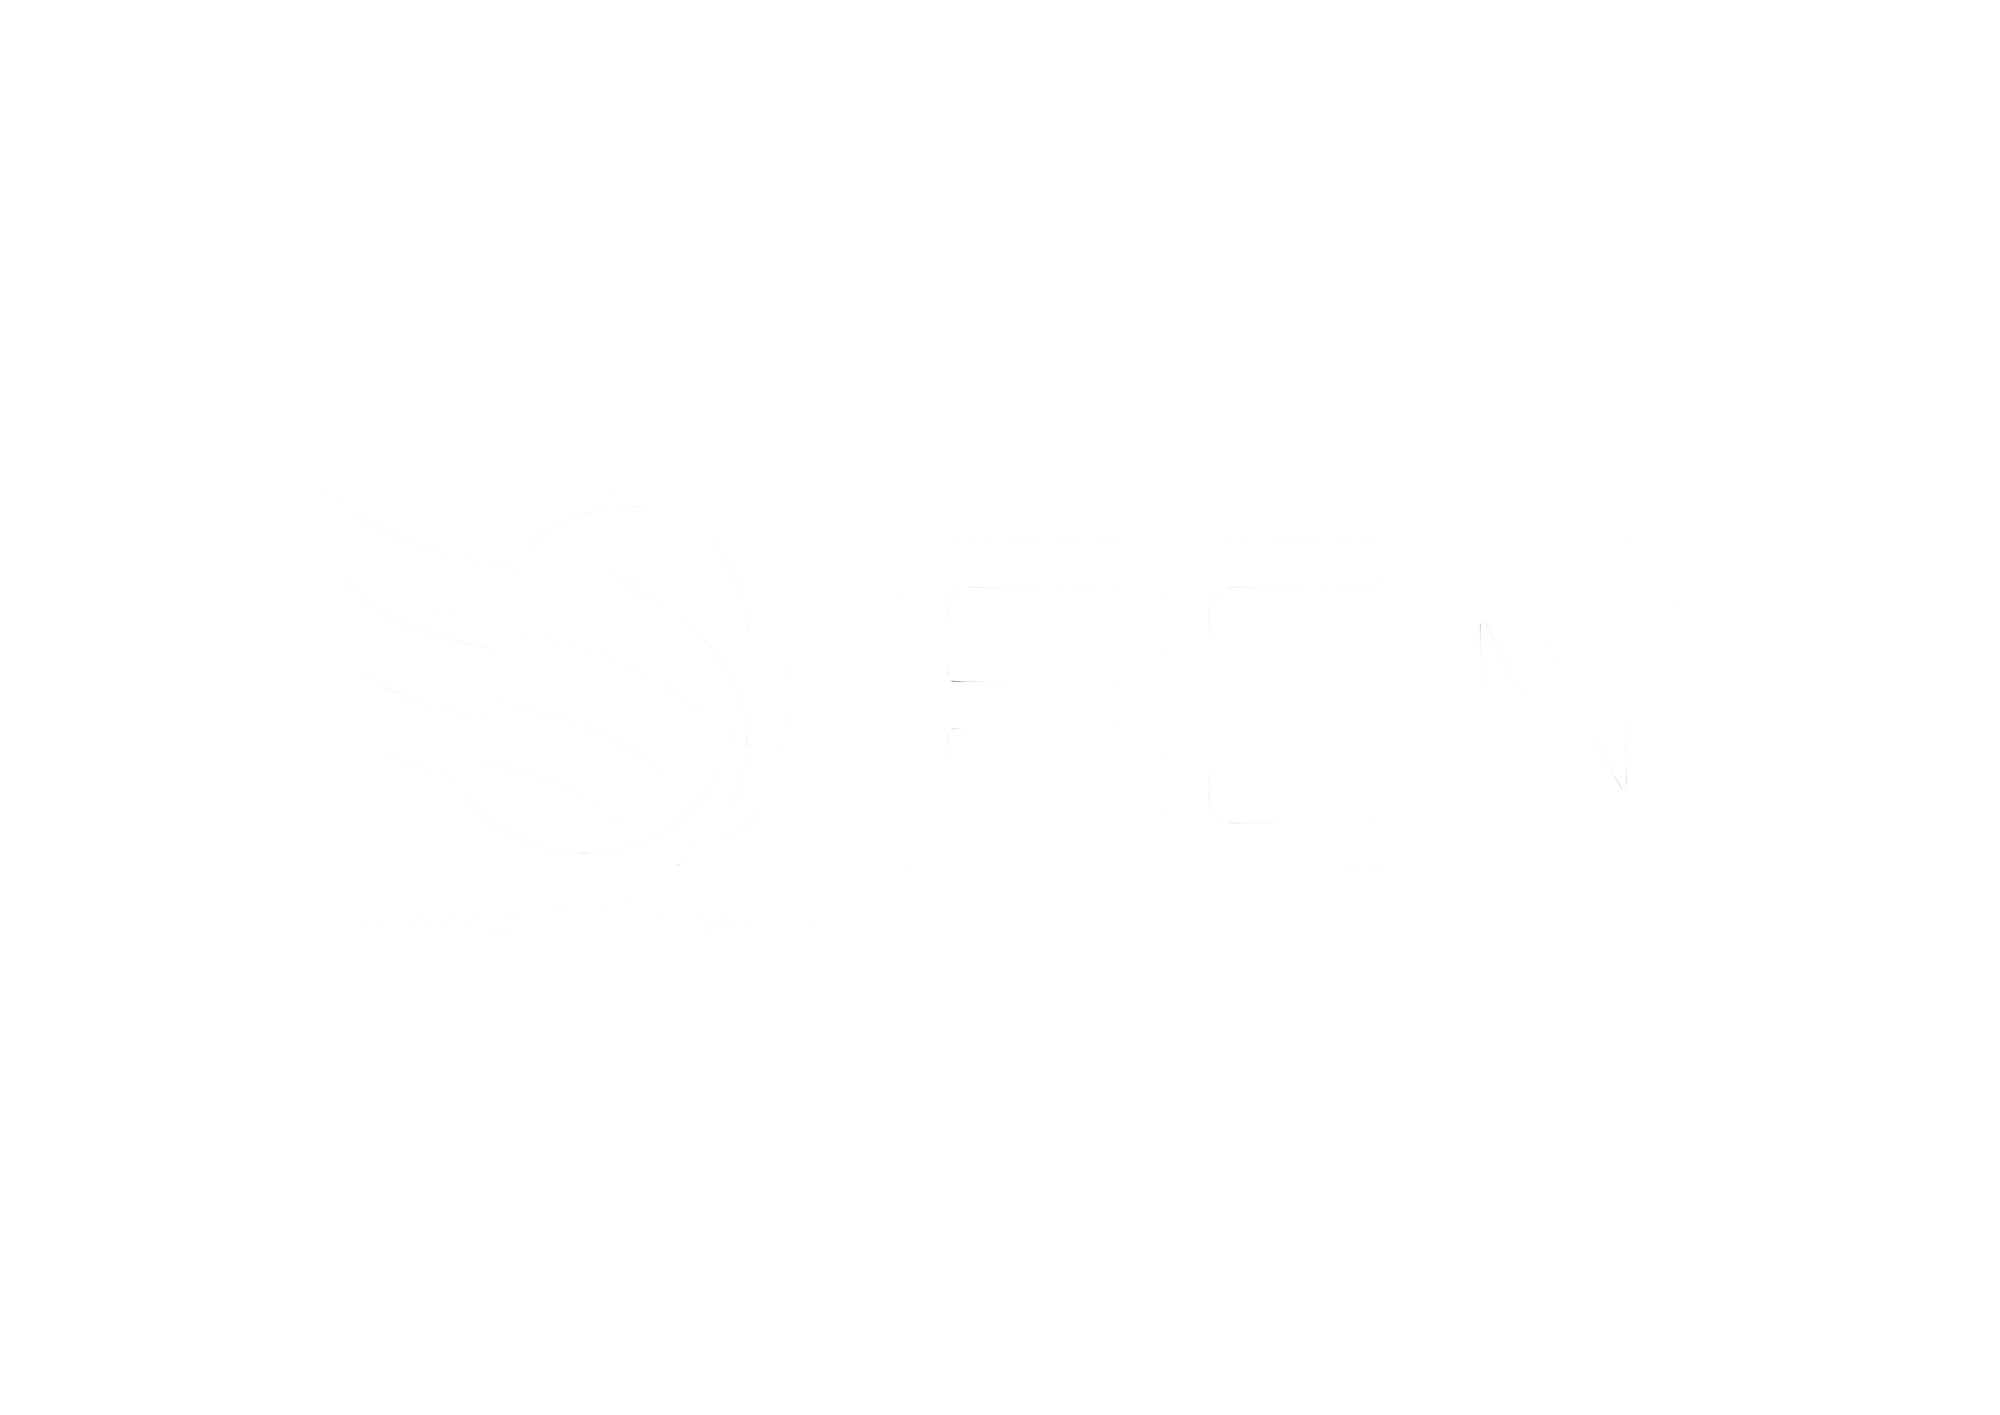 FCN logo n font 1 white